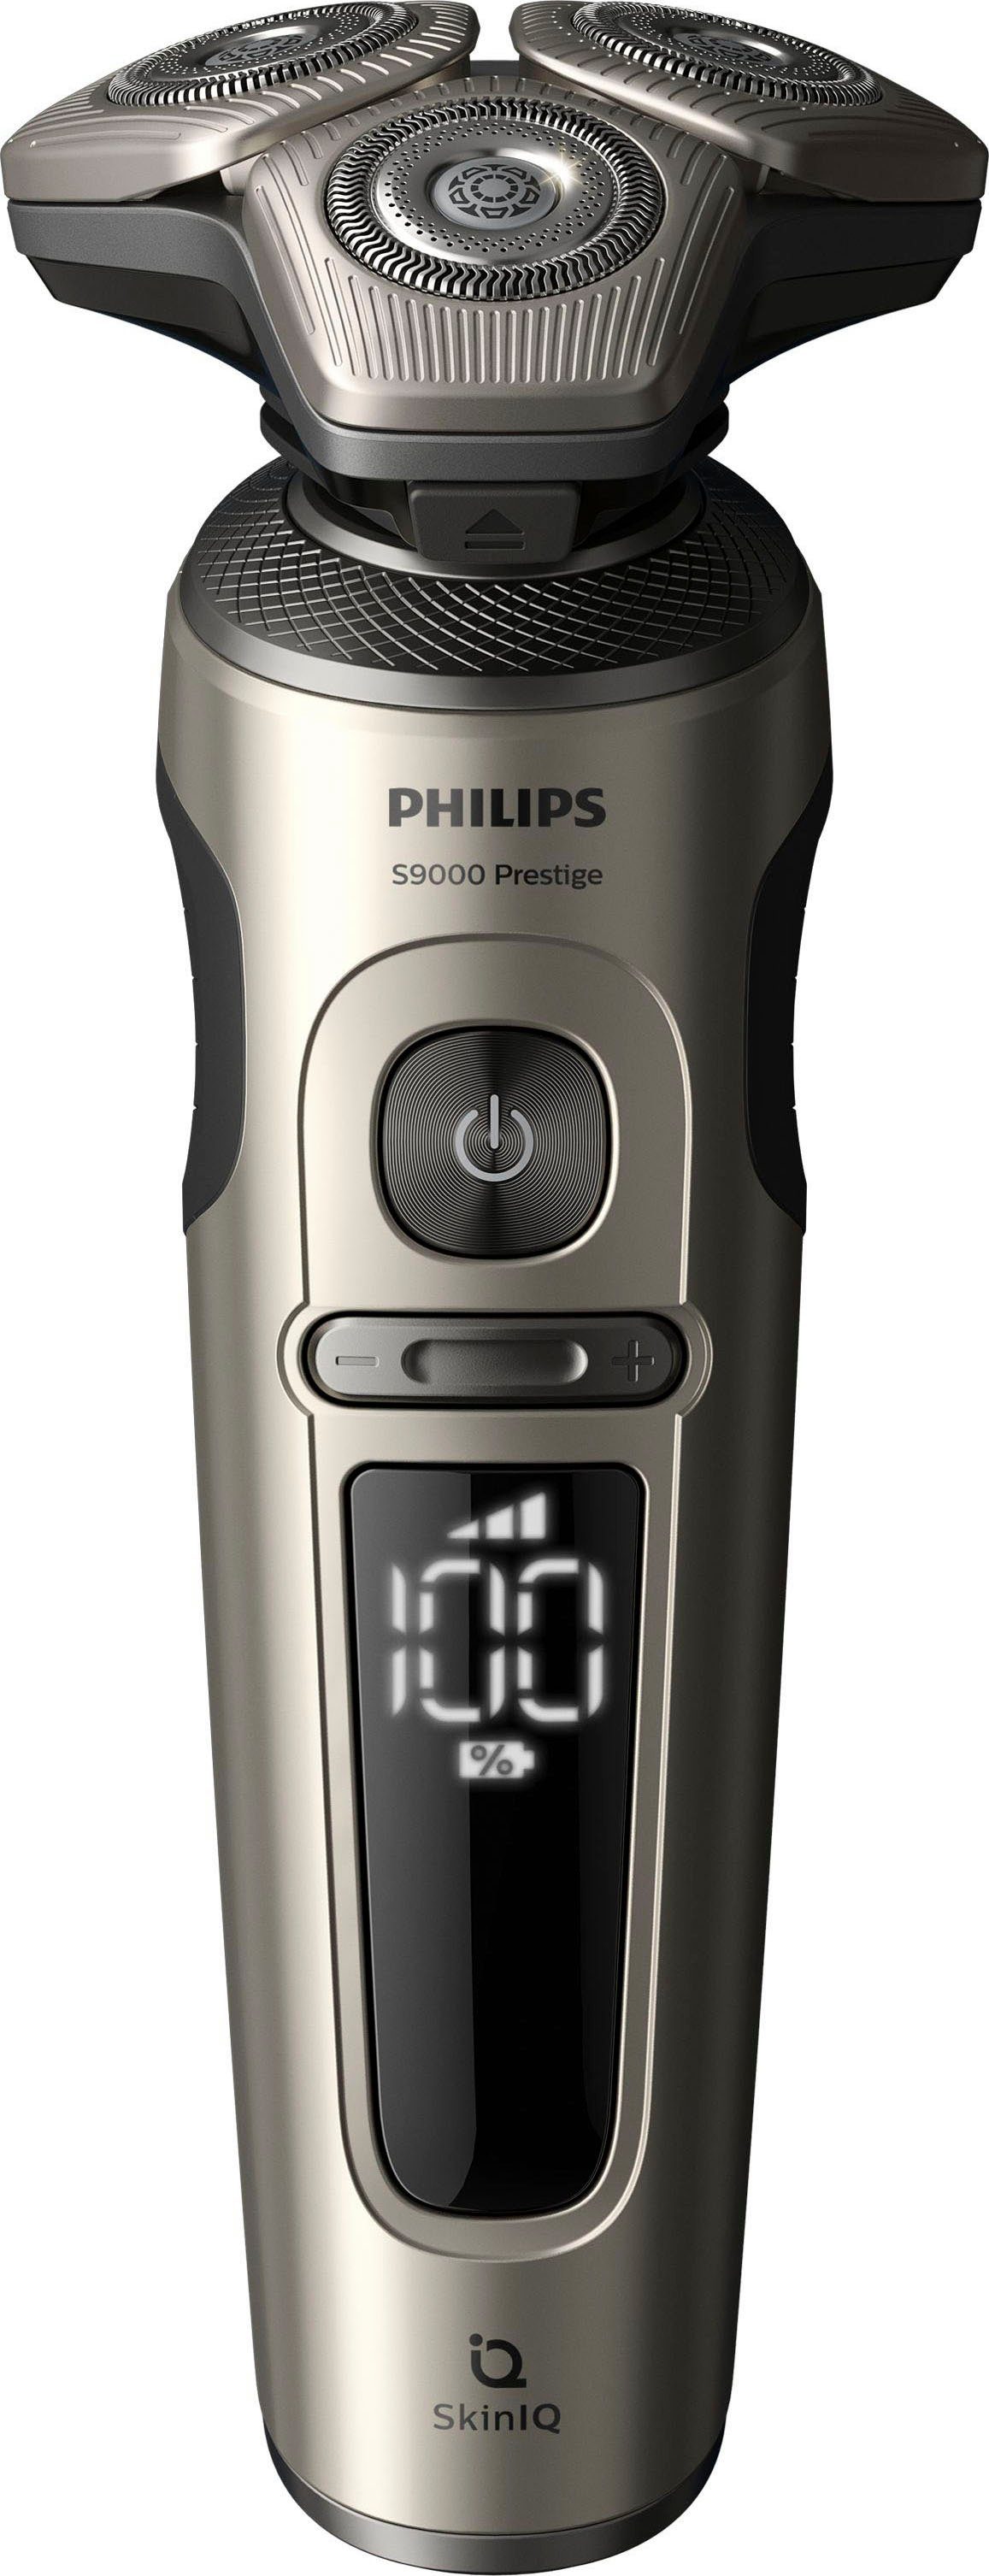 Philips Elektrorasierer Series 9000 Prestige 2, Reinigungsstation, Aufsätze: mit SkinIQ Technologie SP9883/36, Etui